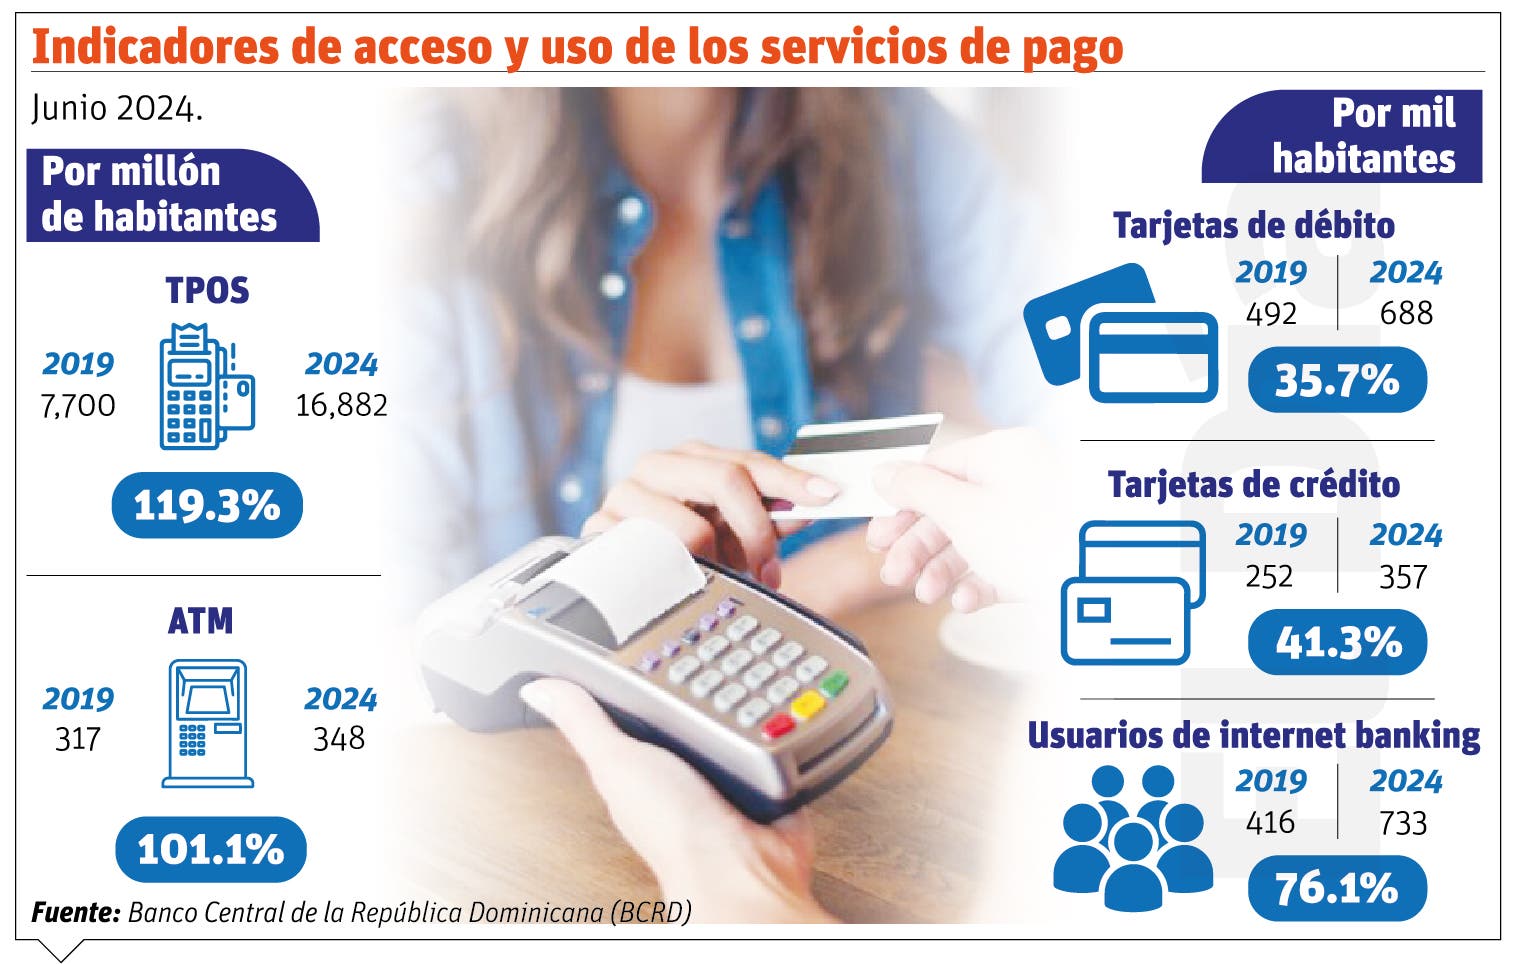 Pagos electrónicos facilitan acceso a servicios financieros